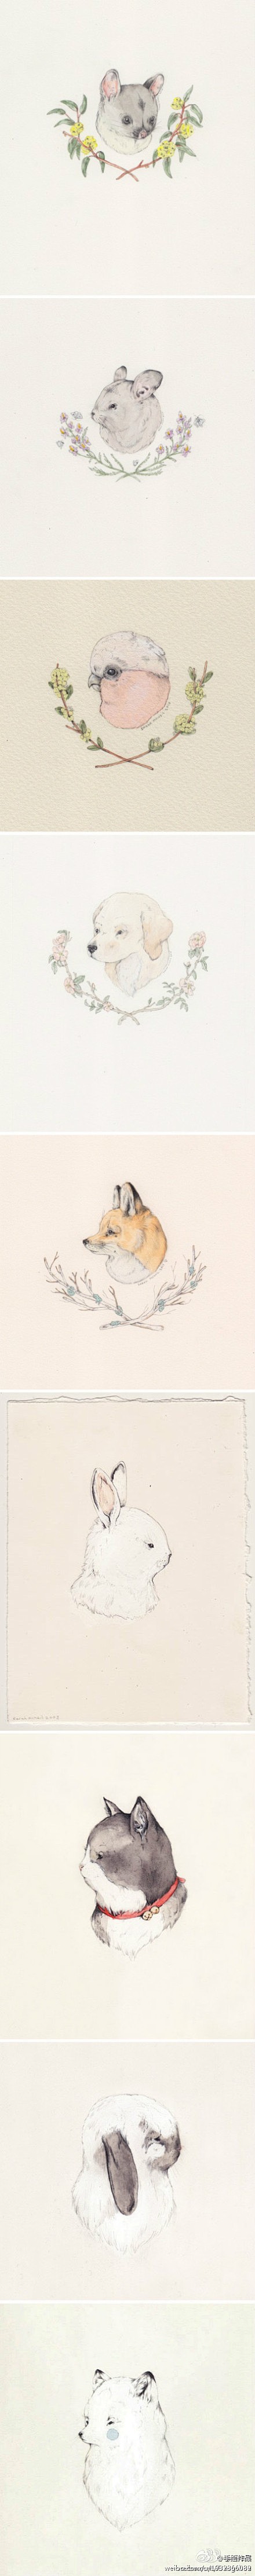 清新淡雅的 彩铅+水彩 手绘小动物。作者...